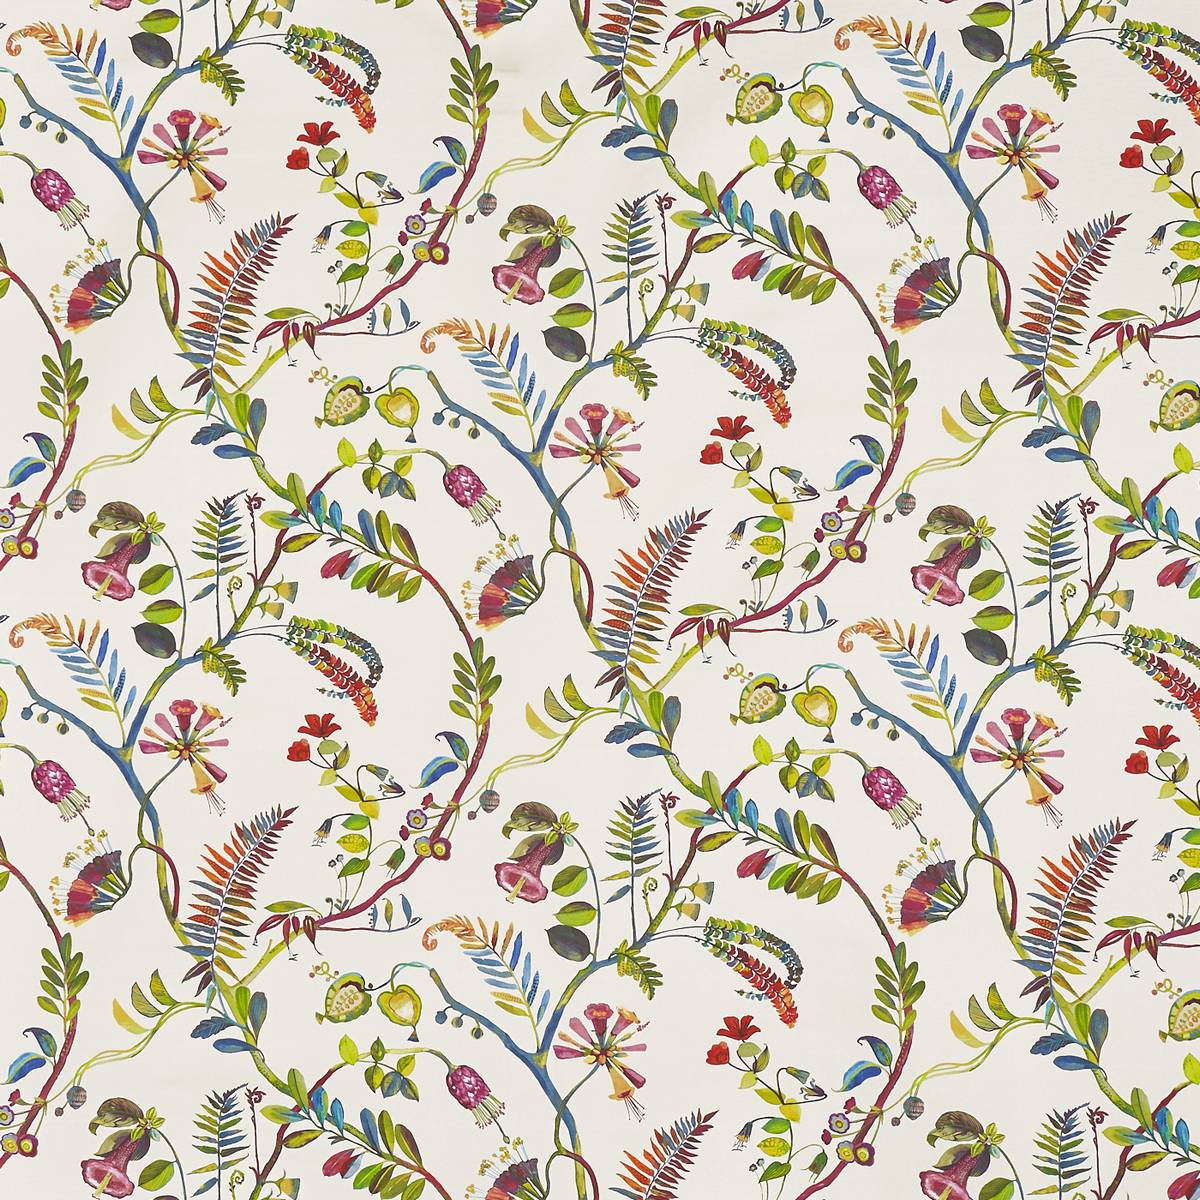 Tropicana Jewel Fabric by Prestigious Textiles